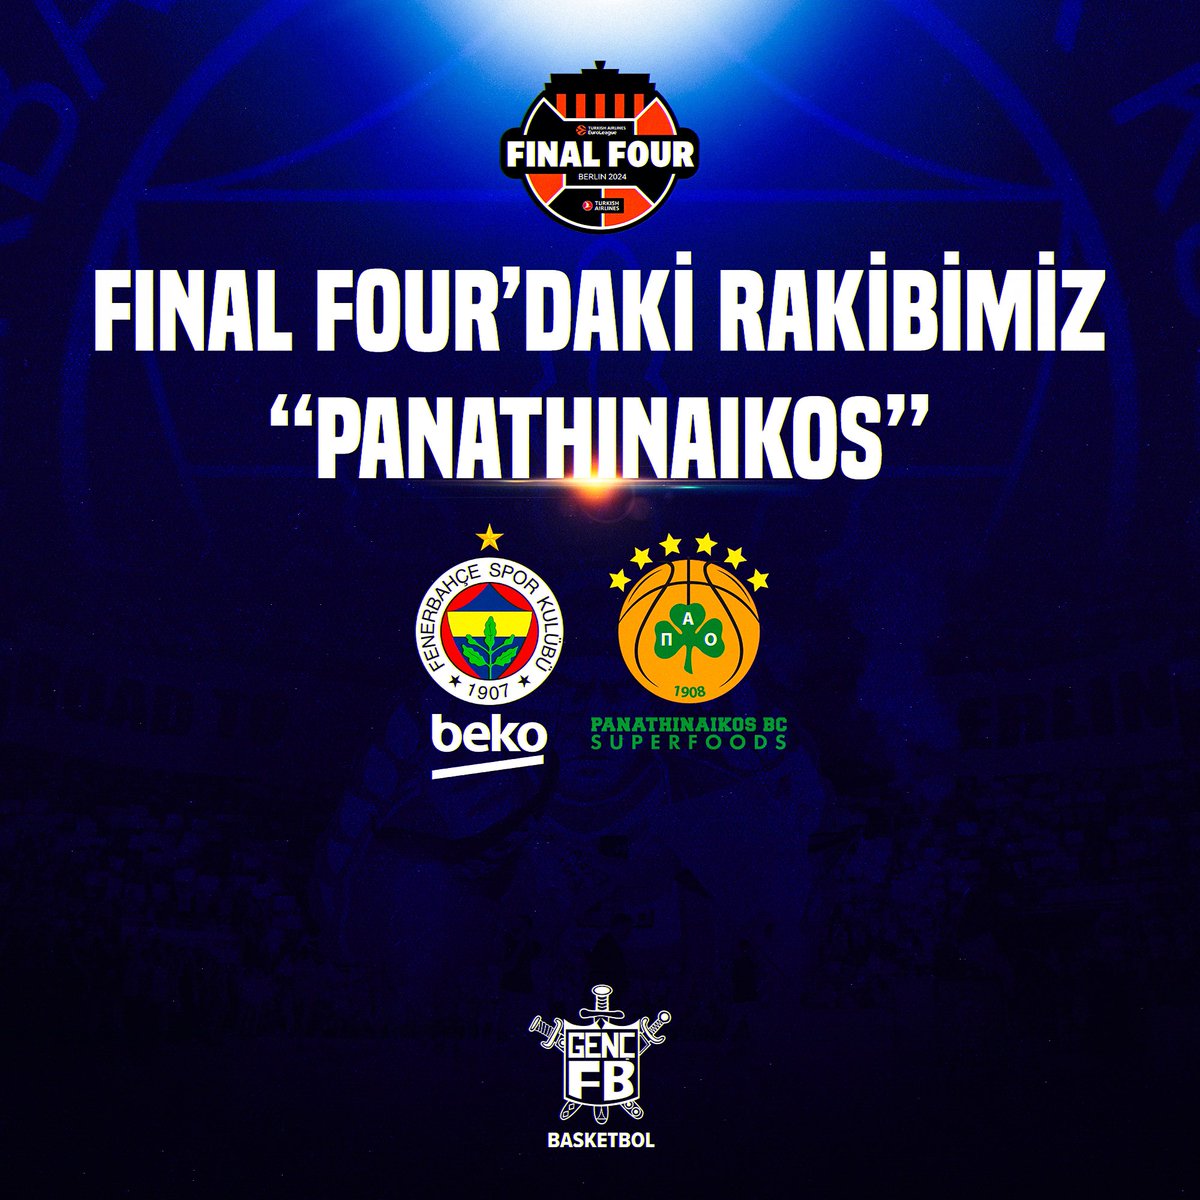 ℹ️ Euroleague’de Final Four’a yükselen Fenerbahçemiz; Final Four’da ergin ataman yönetimindeki Panathinaikos ile karşılaşacak. #GFBBasketbol